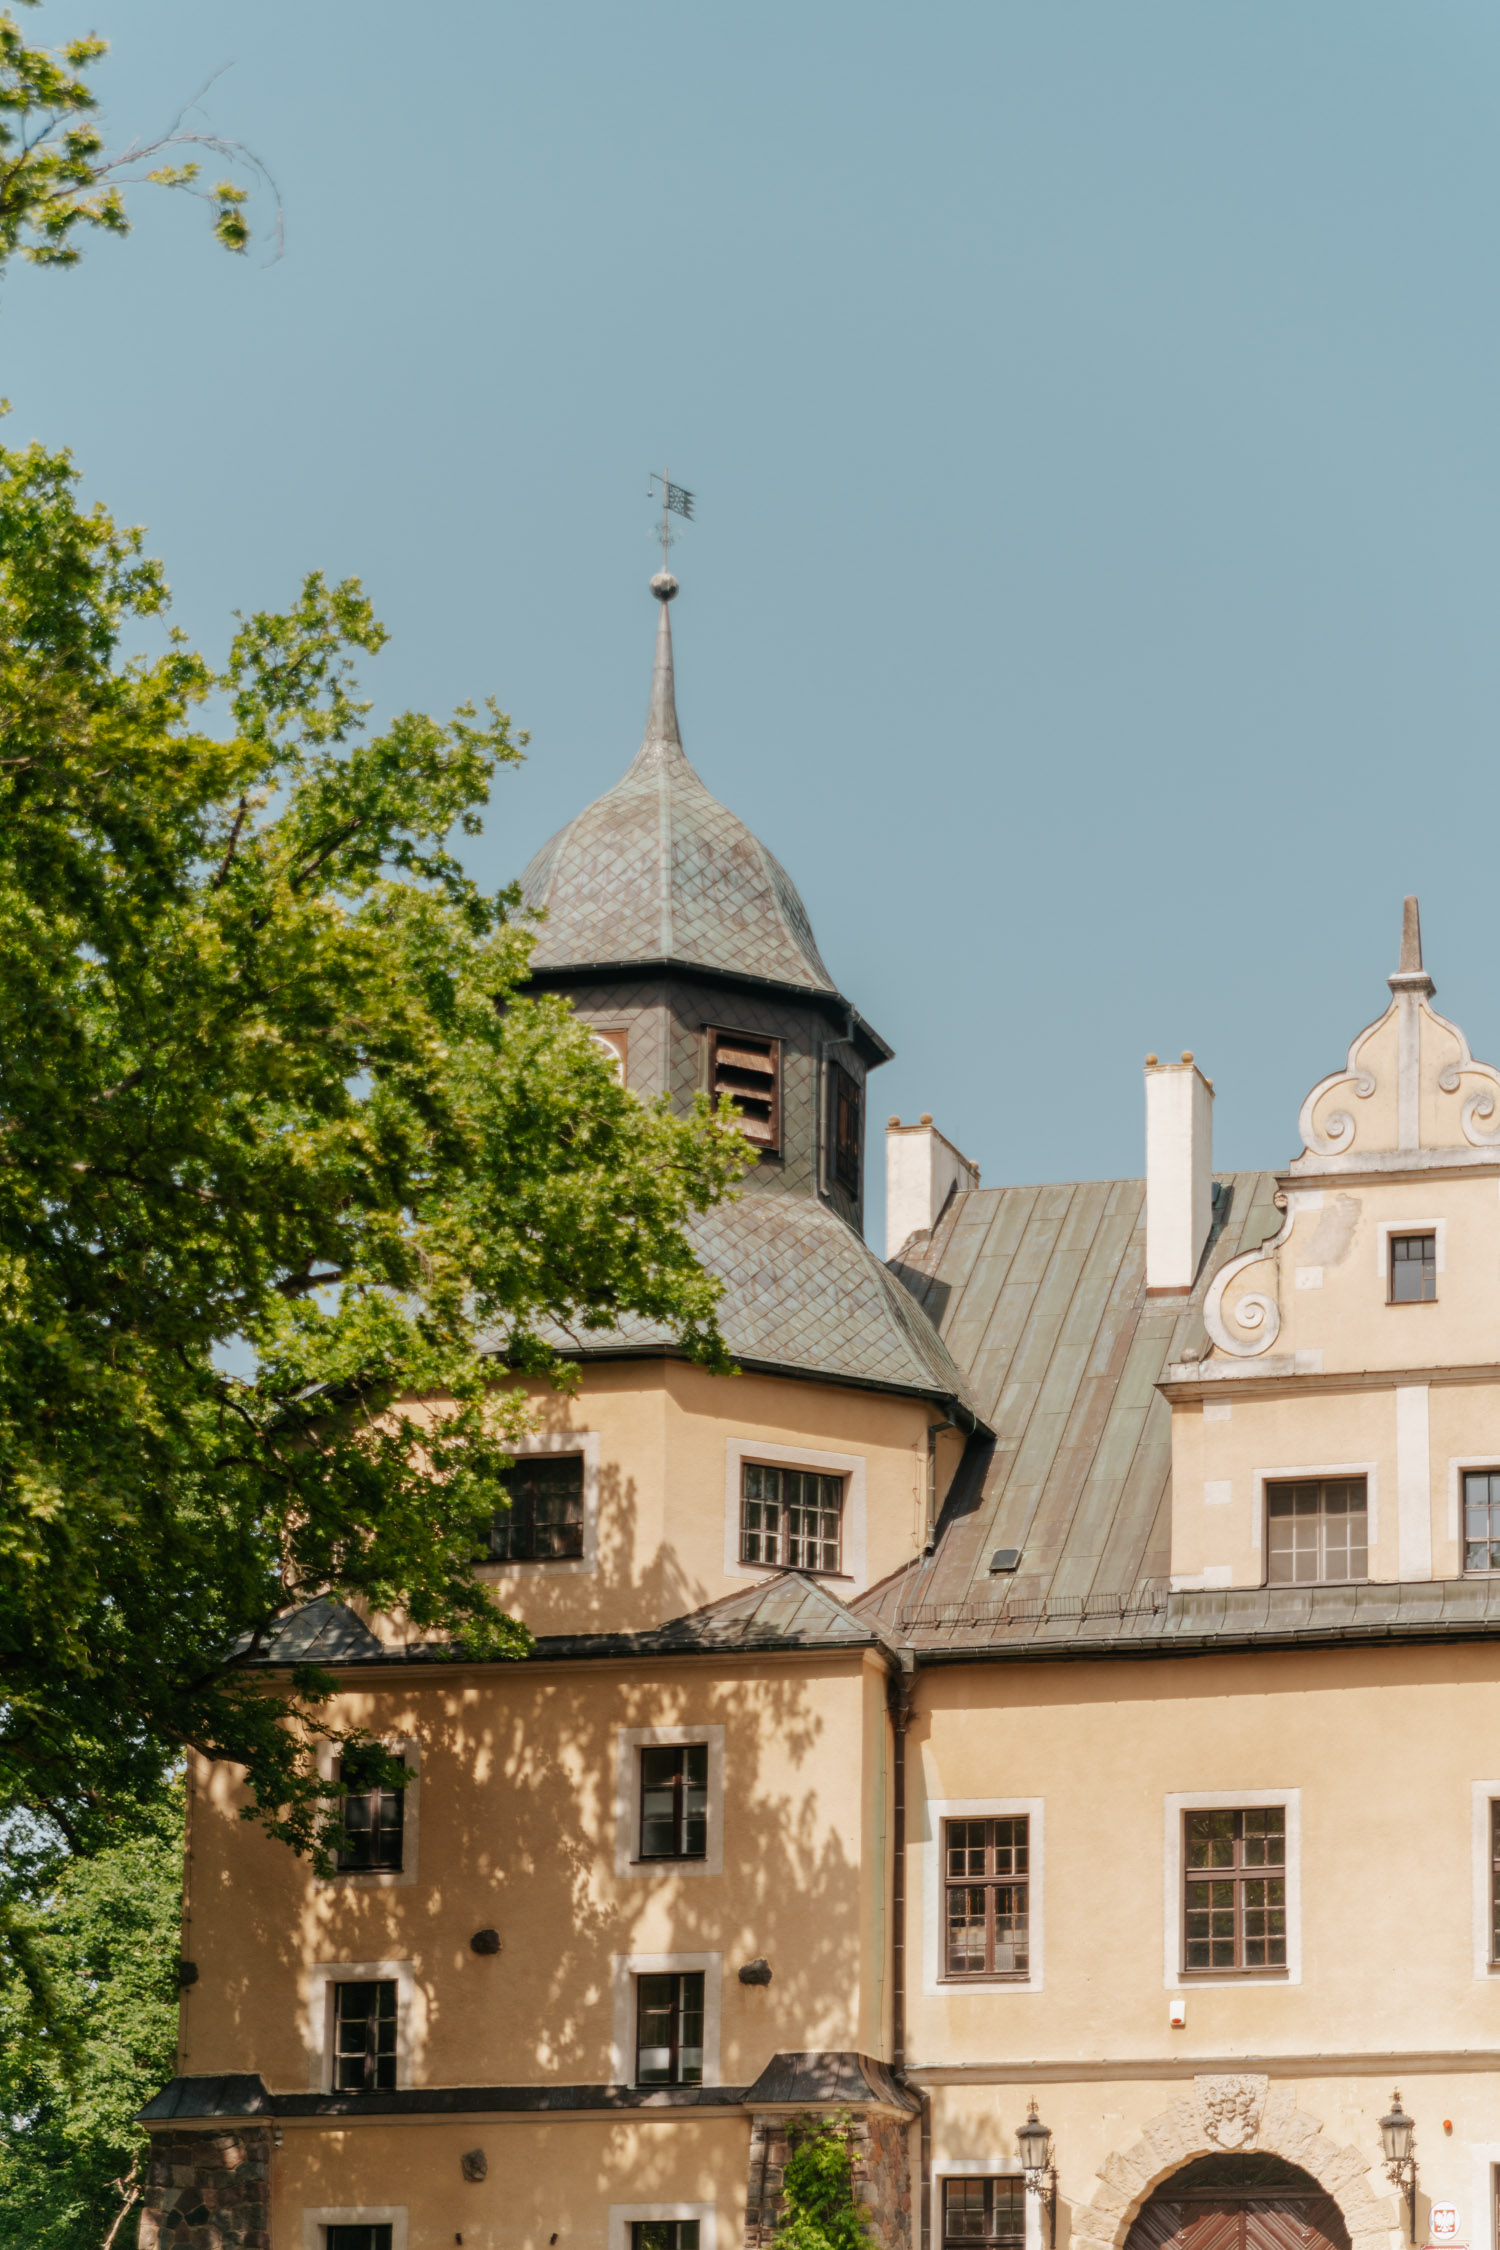 The castle Zamek w Goraju.